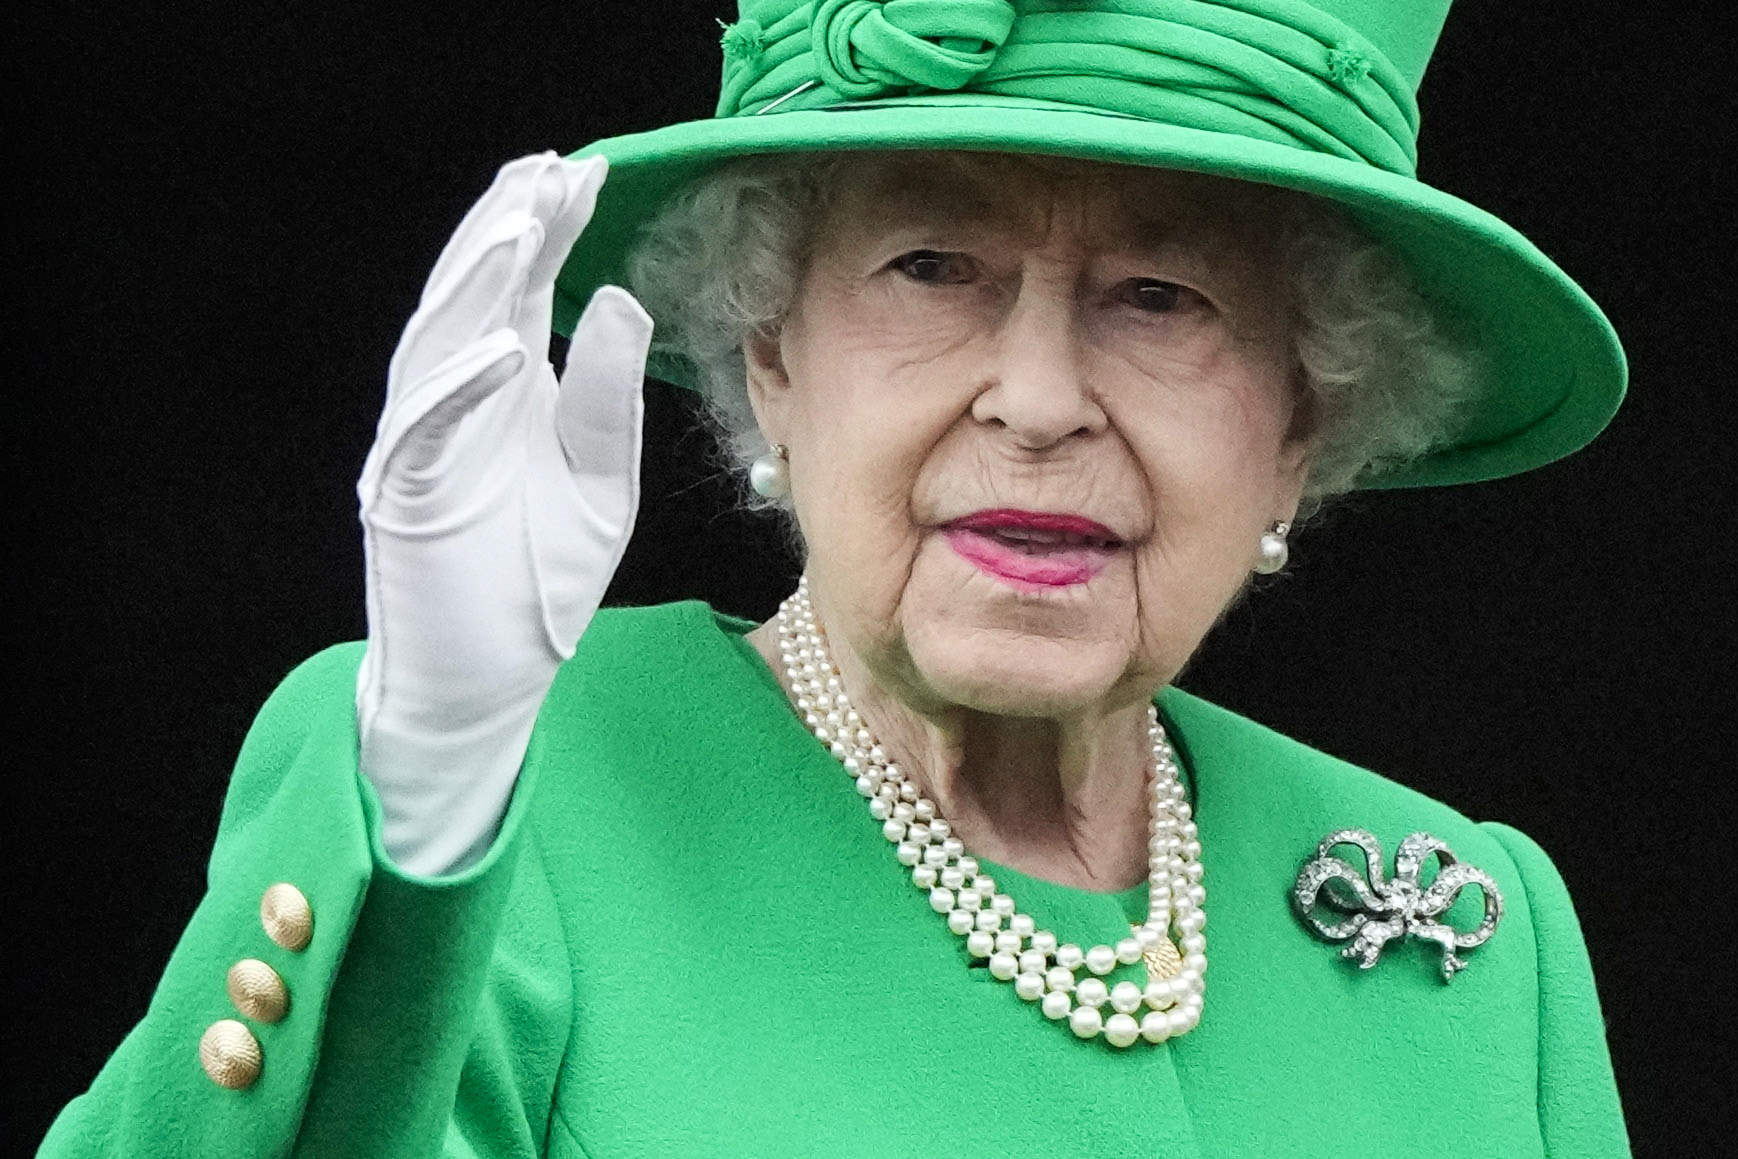 La reina Isabel II envía un mensaje de condolencias a Canadá tras la masacre